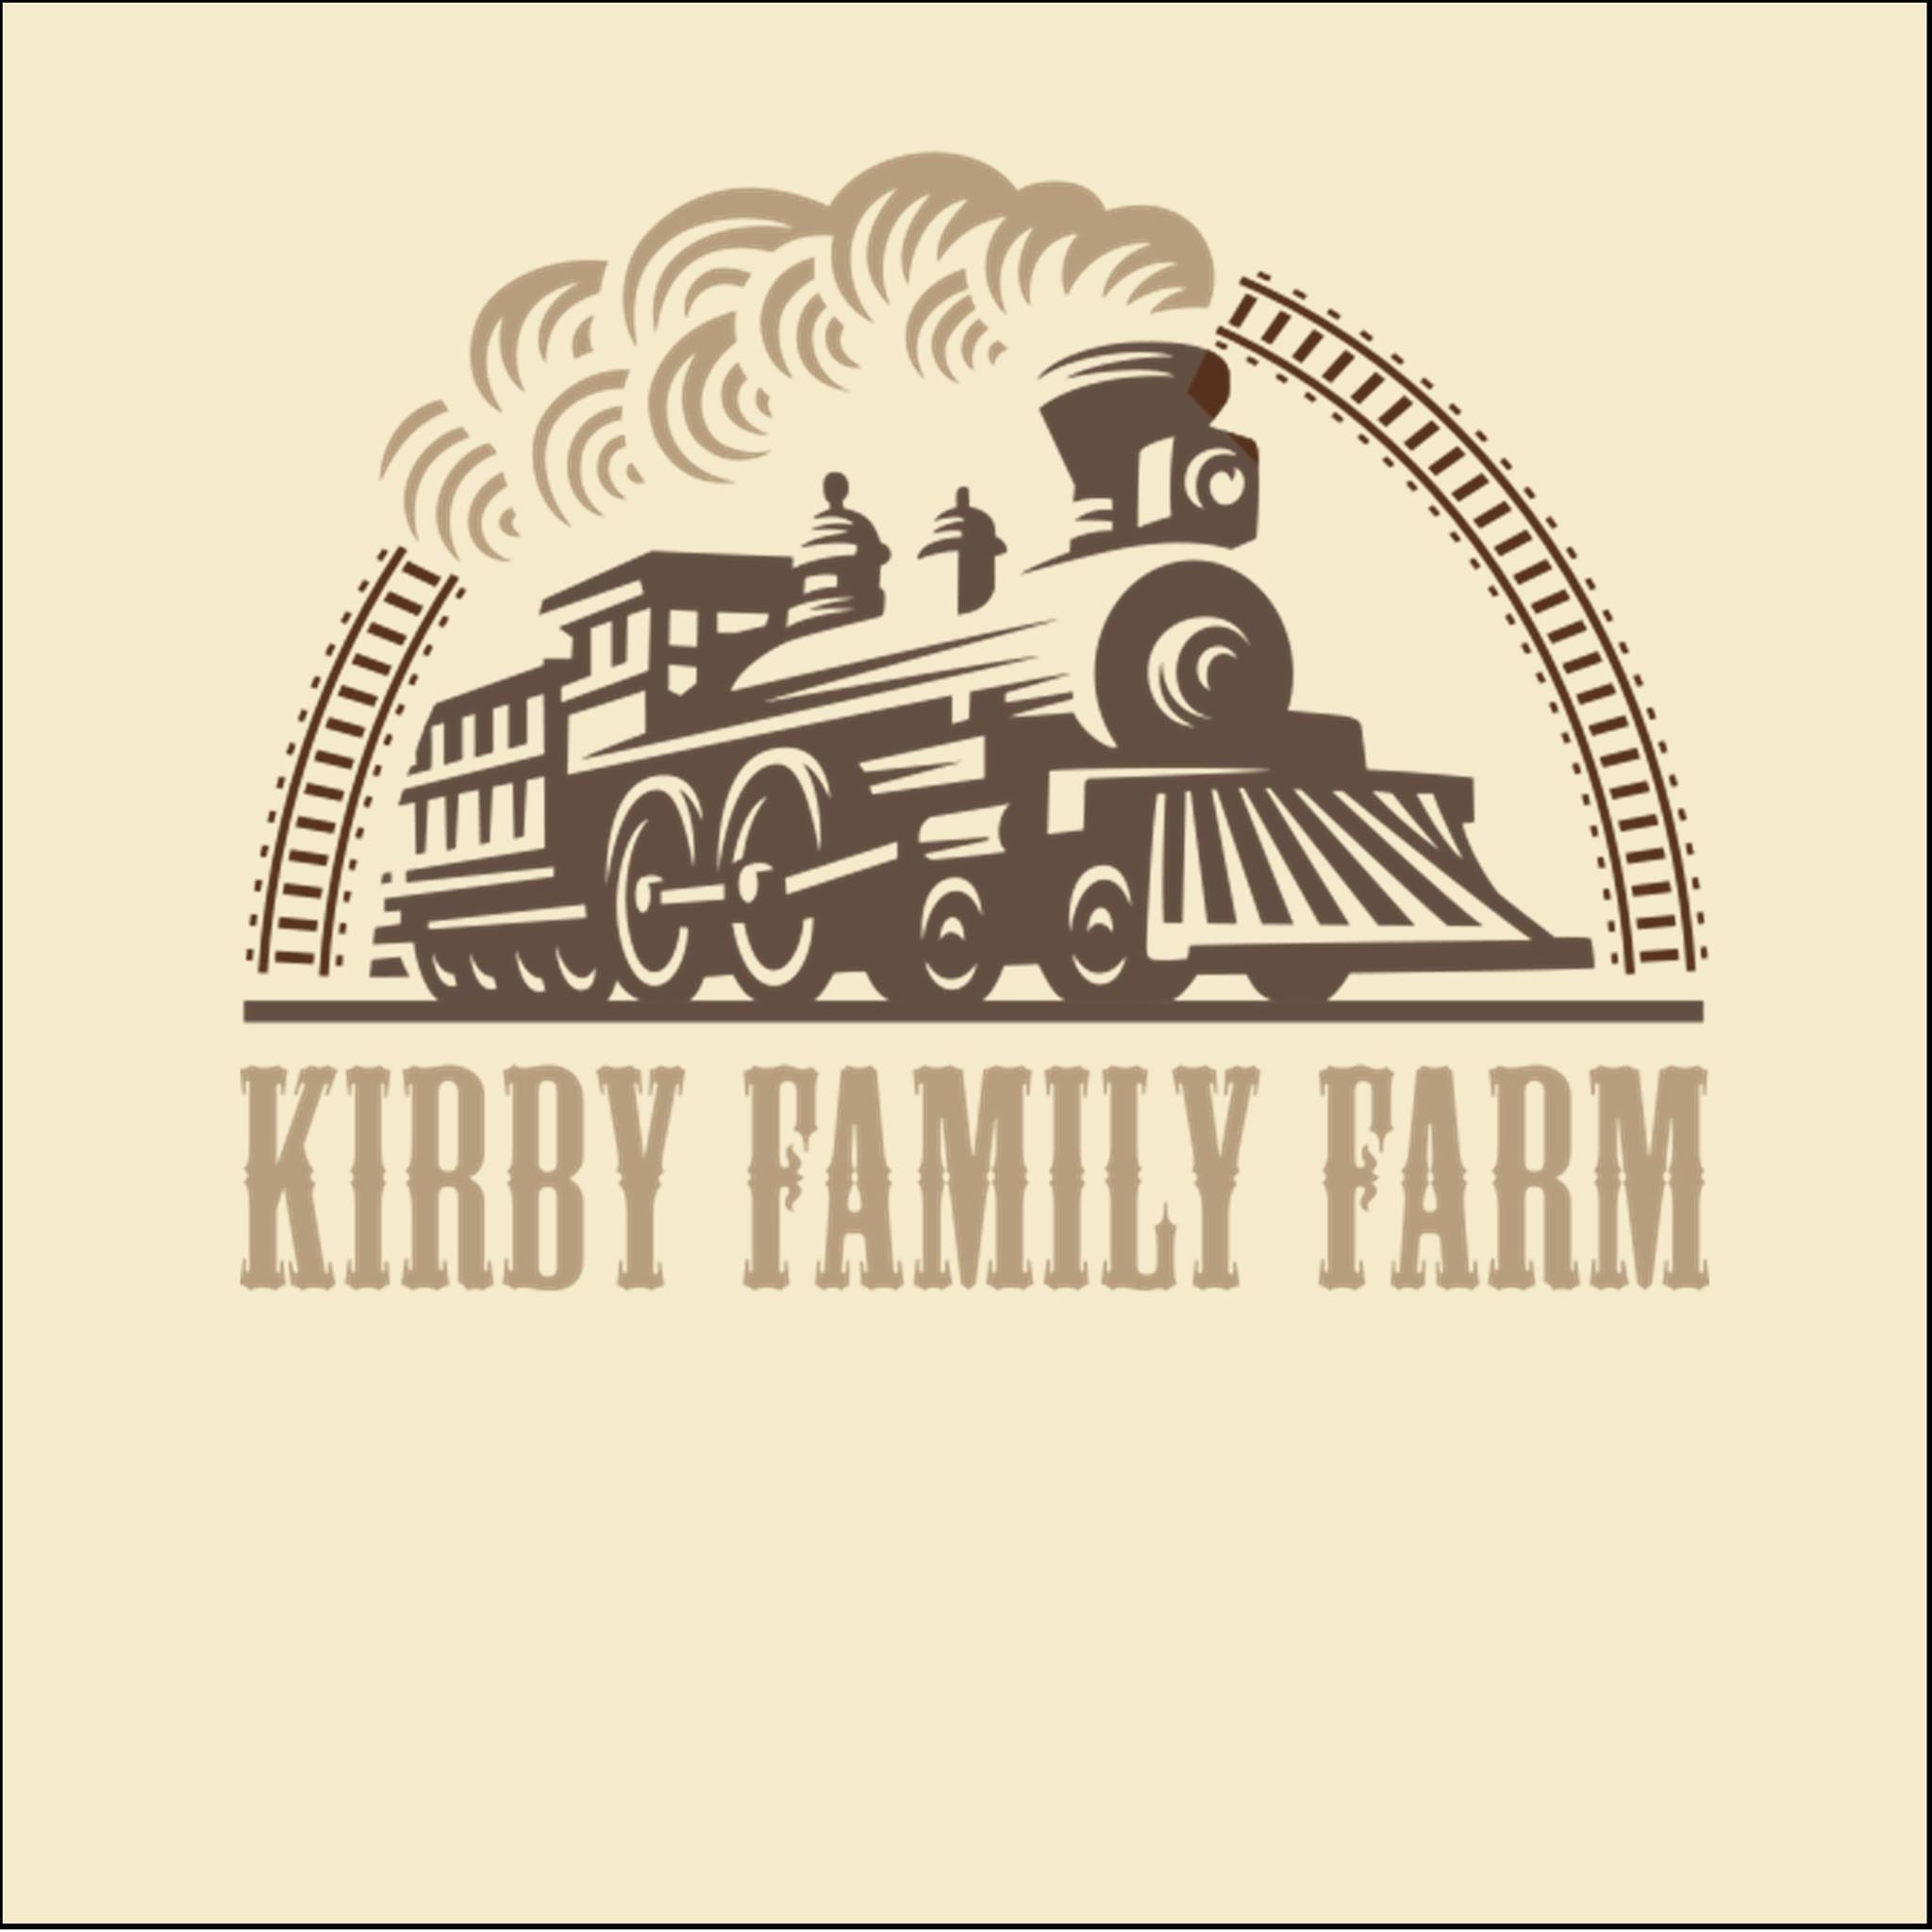 Kirby Family Farm|Zoo and Wildlife Sanctuary |Travel